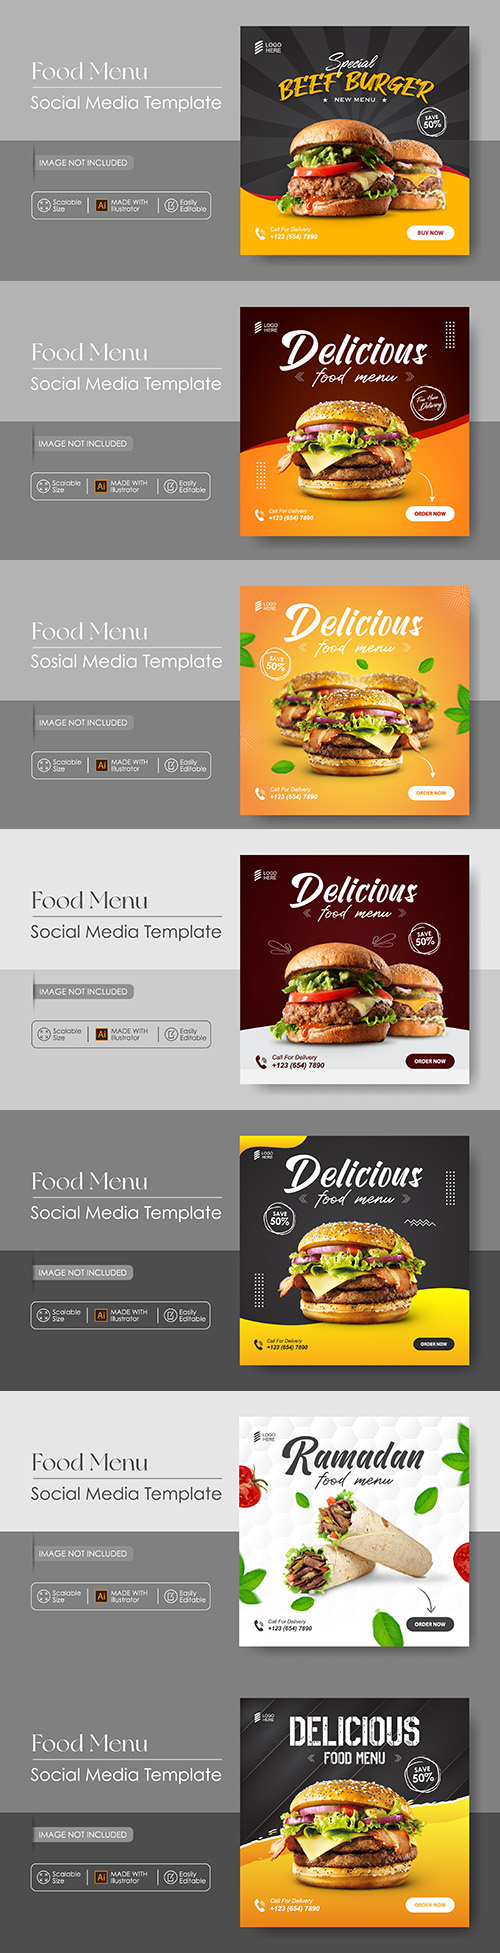 Food menu social media template design promote sale